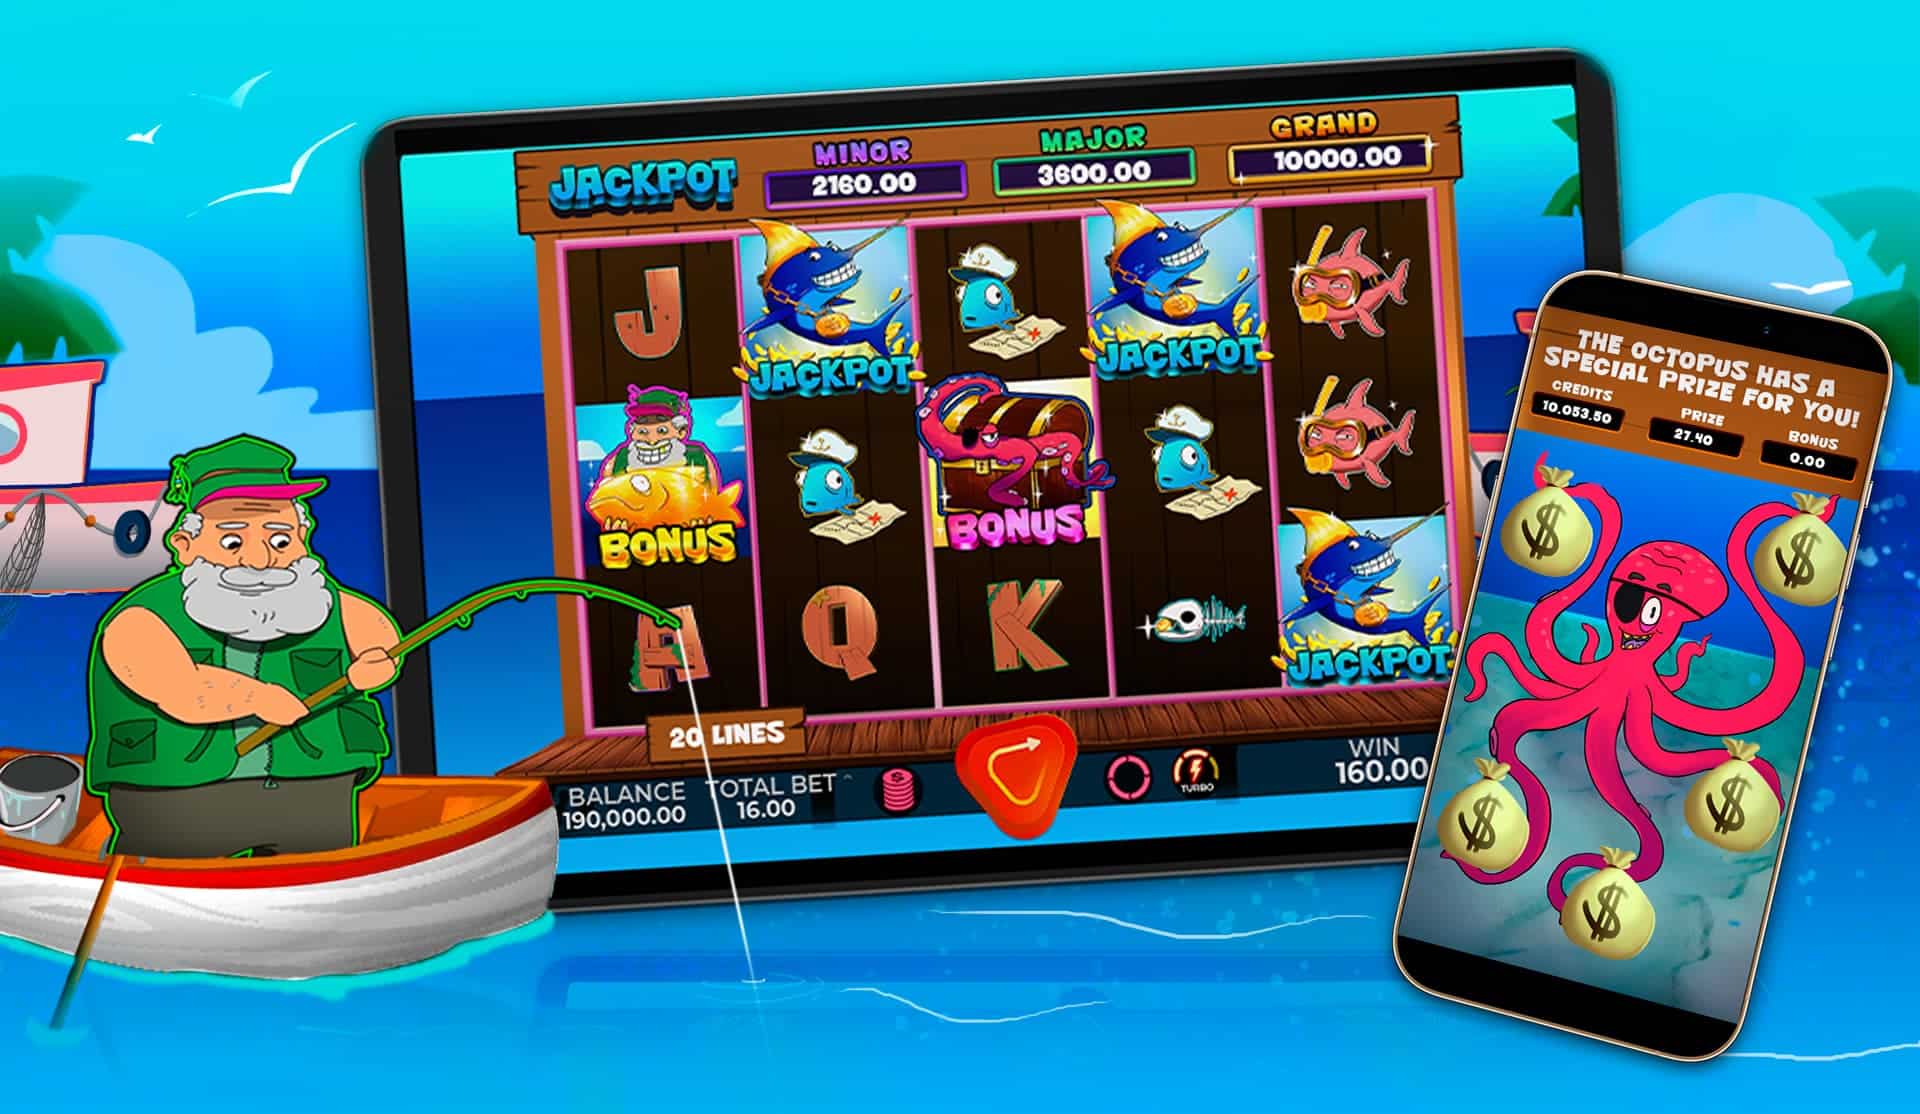 New Slot Released: Rock n' Reels - Caleta Gaming